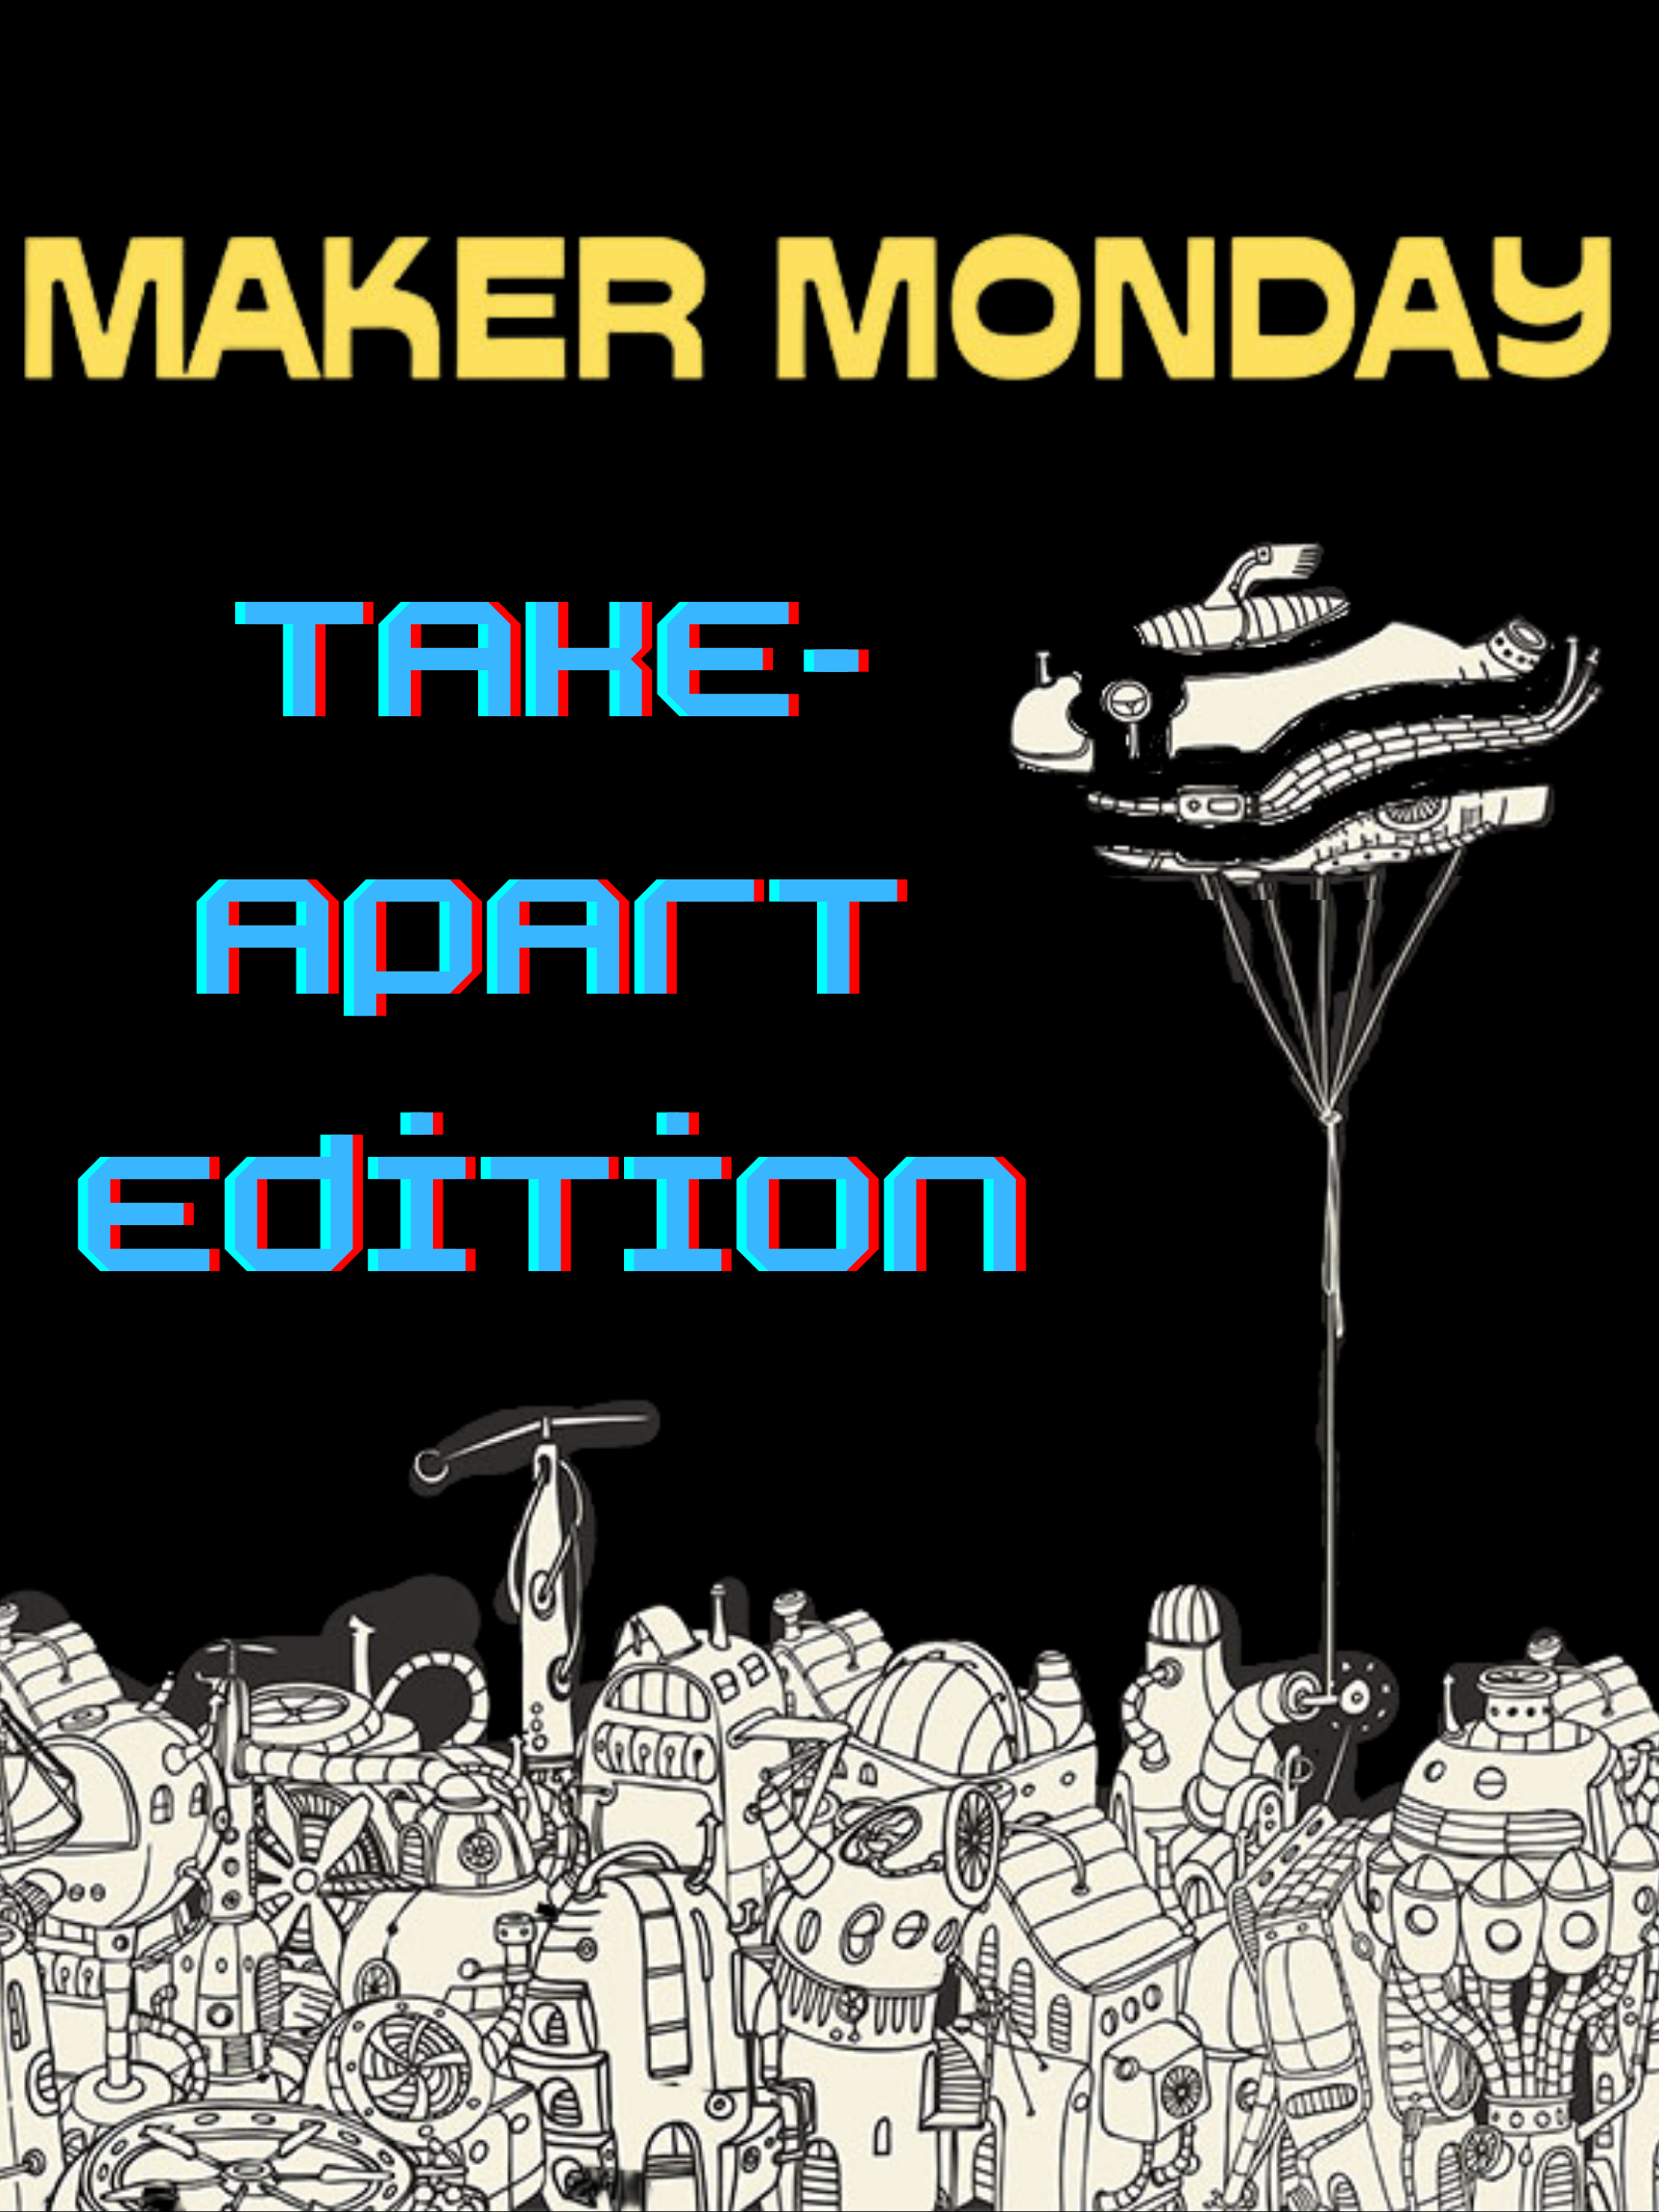 Maker Monday Take-apart edition